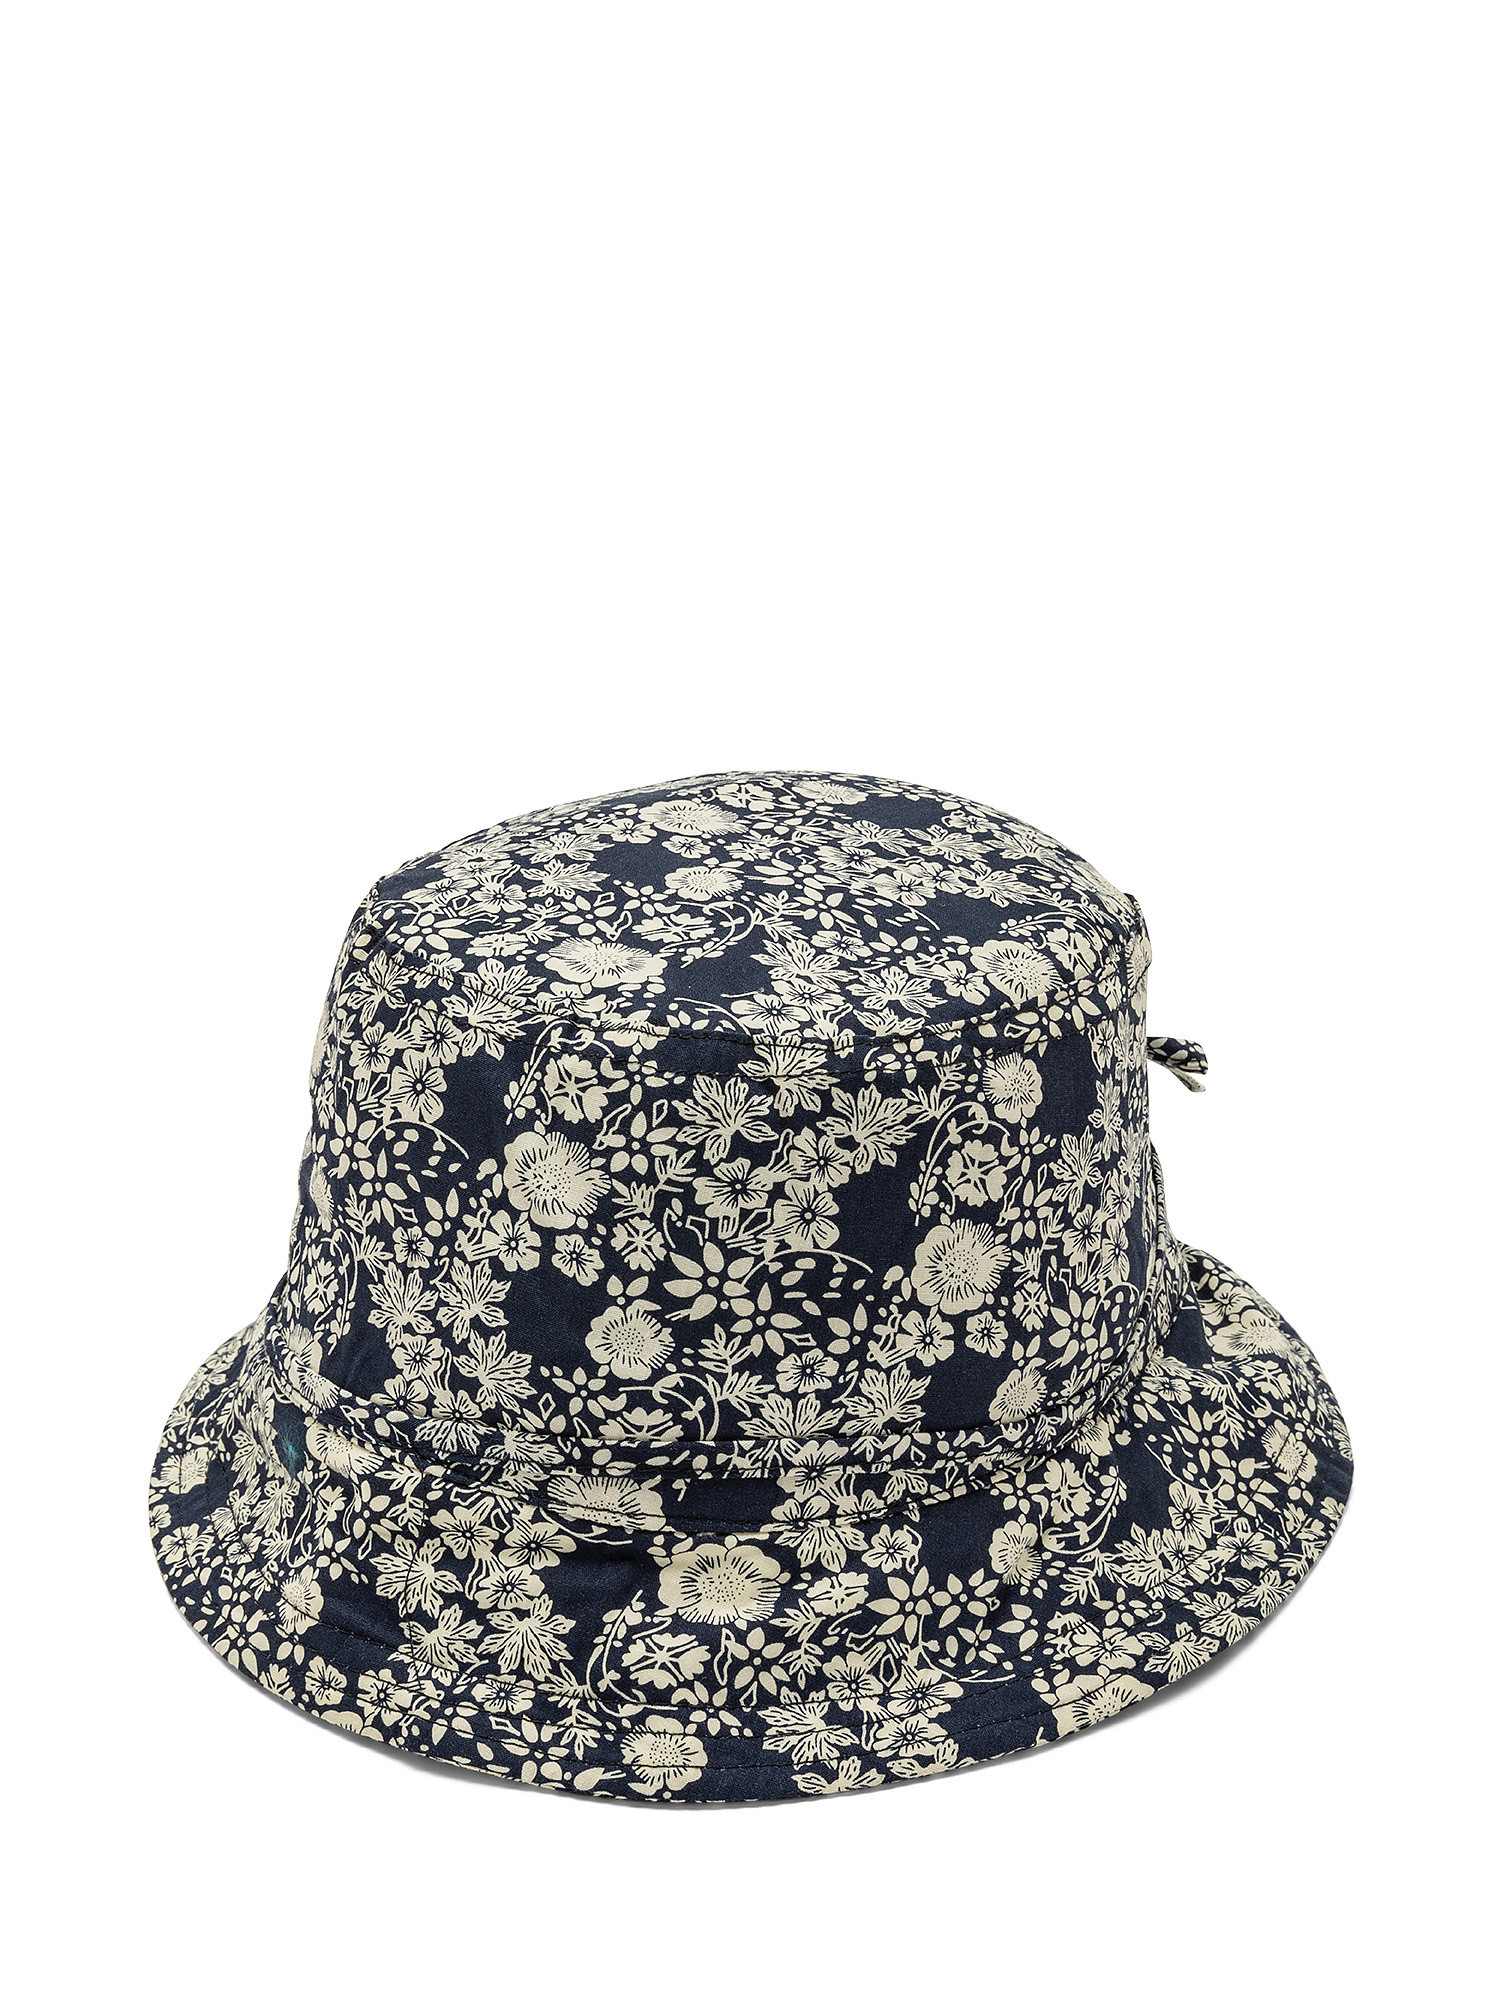 Cappello cotone stampa a fiori, Blu, large